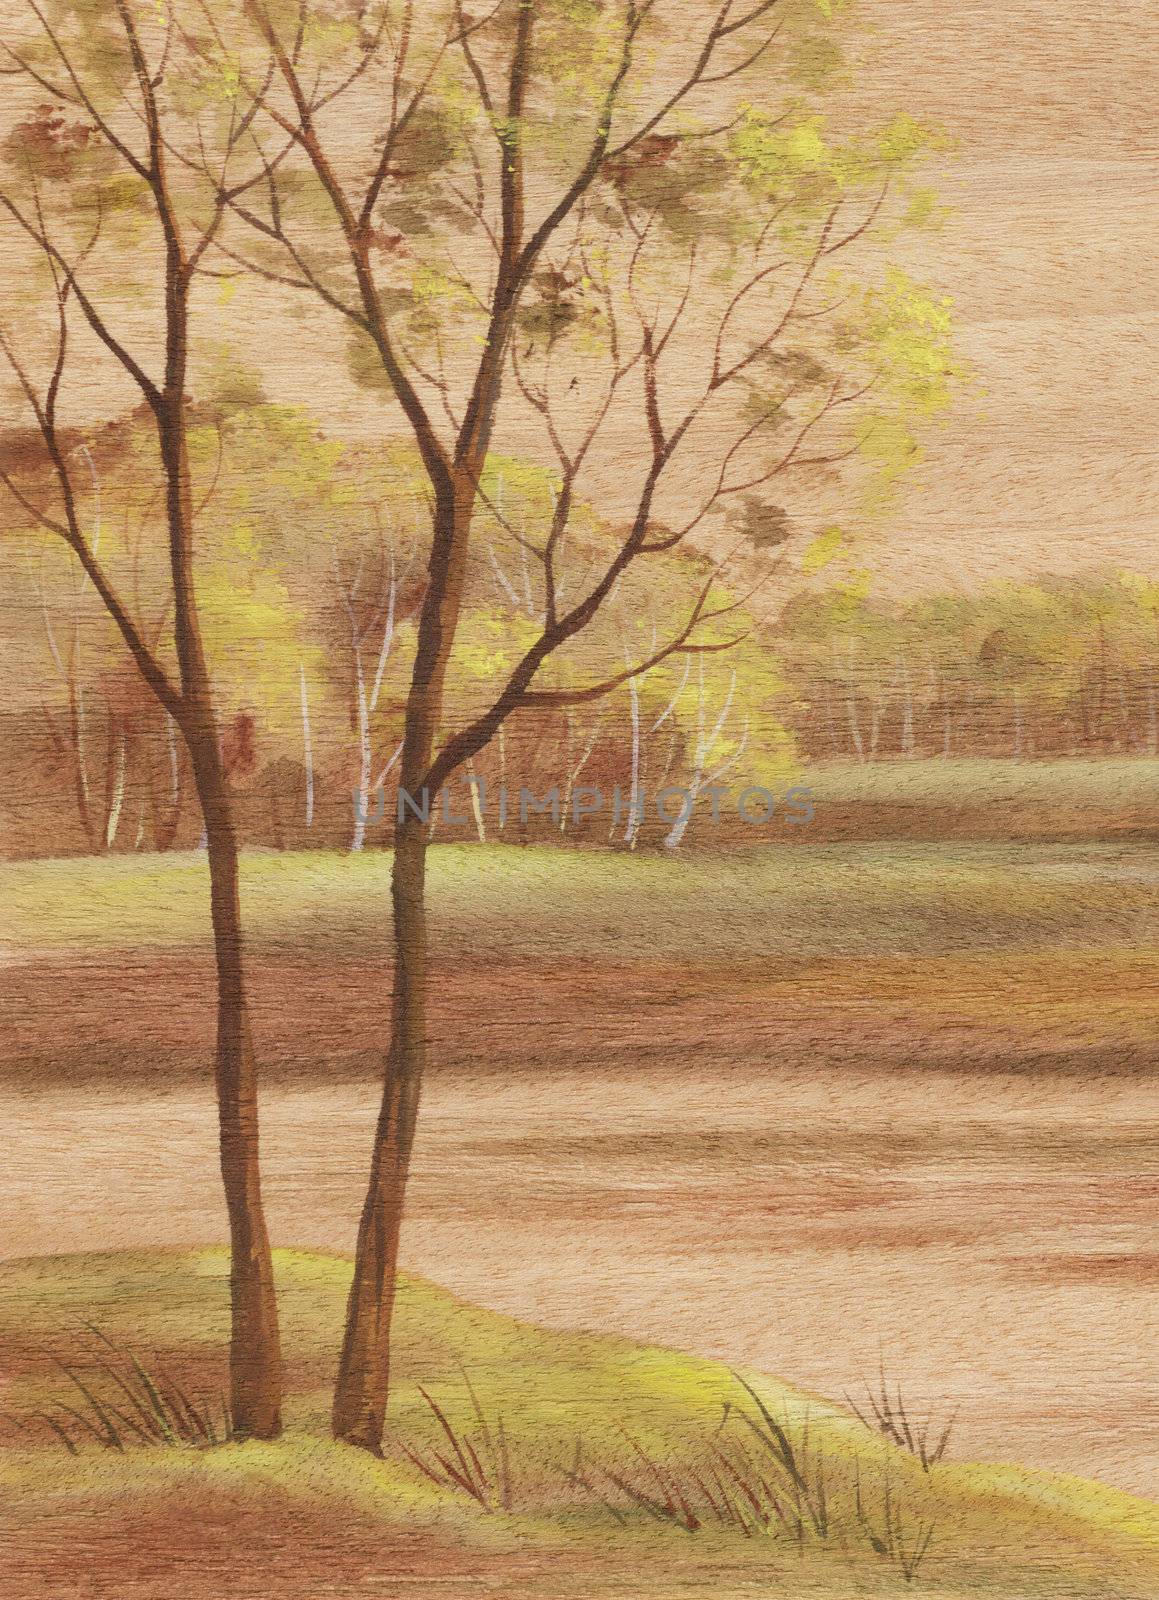 Landscape on wood veneer by alexcoolok